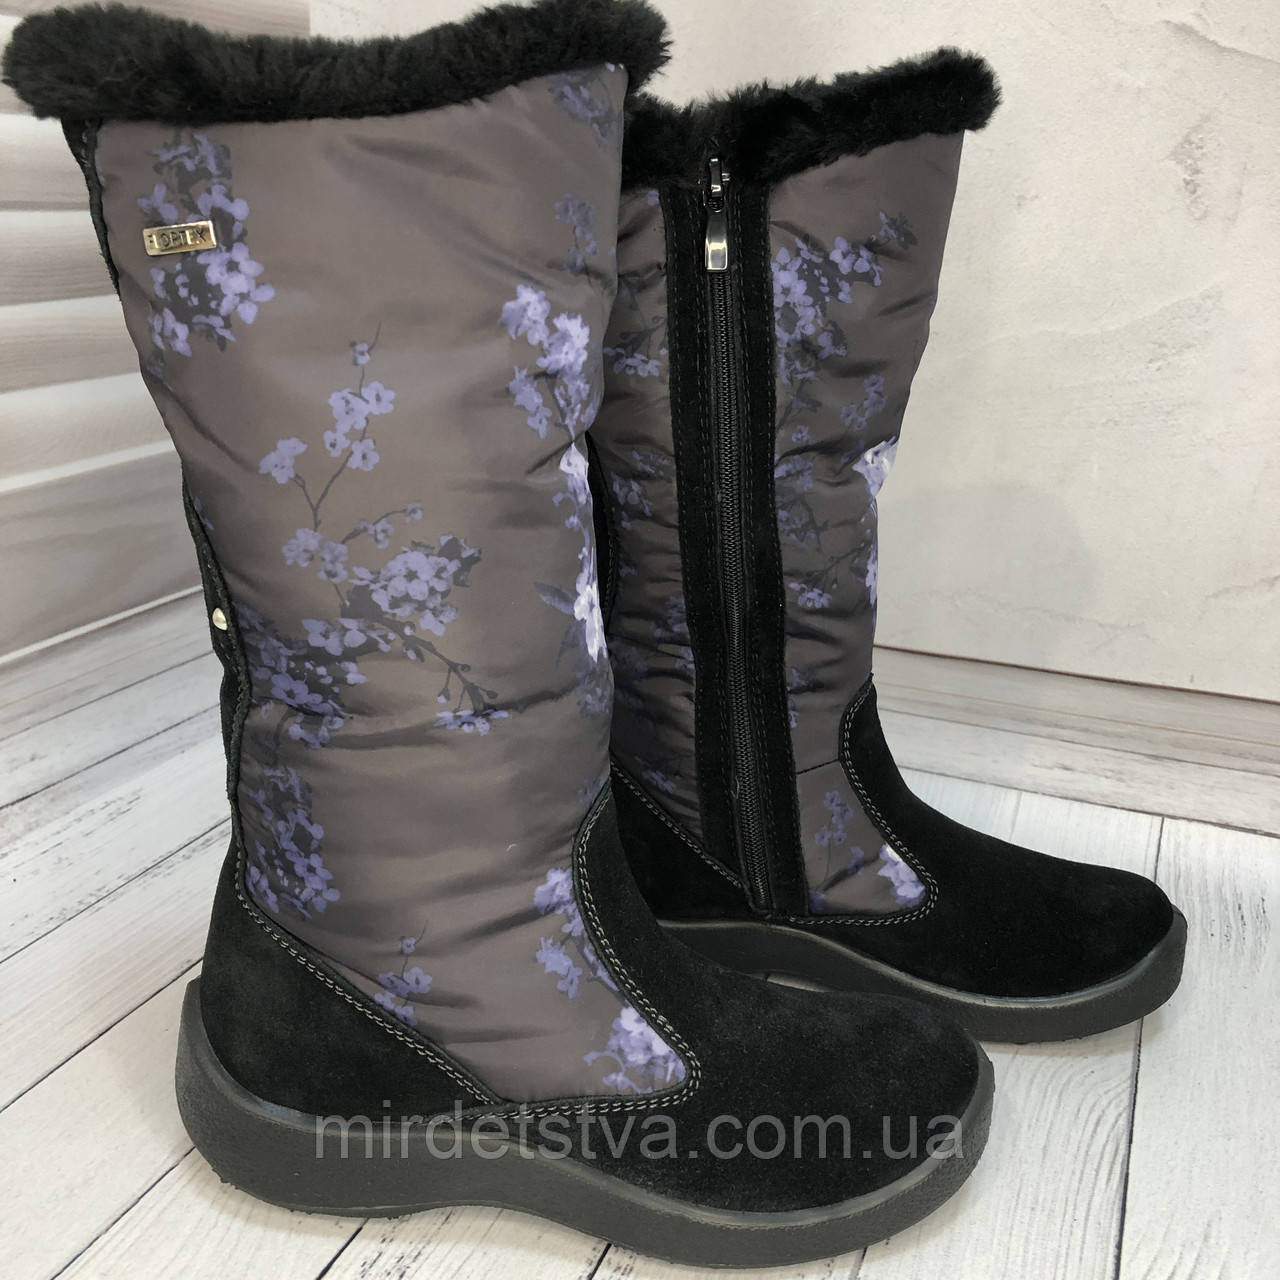 Зимові чоботи для дівчинки Floare розмір 37